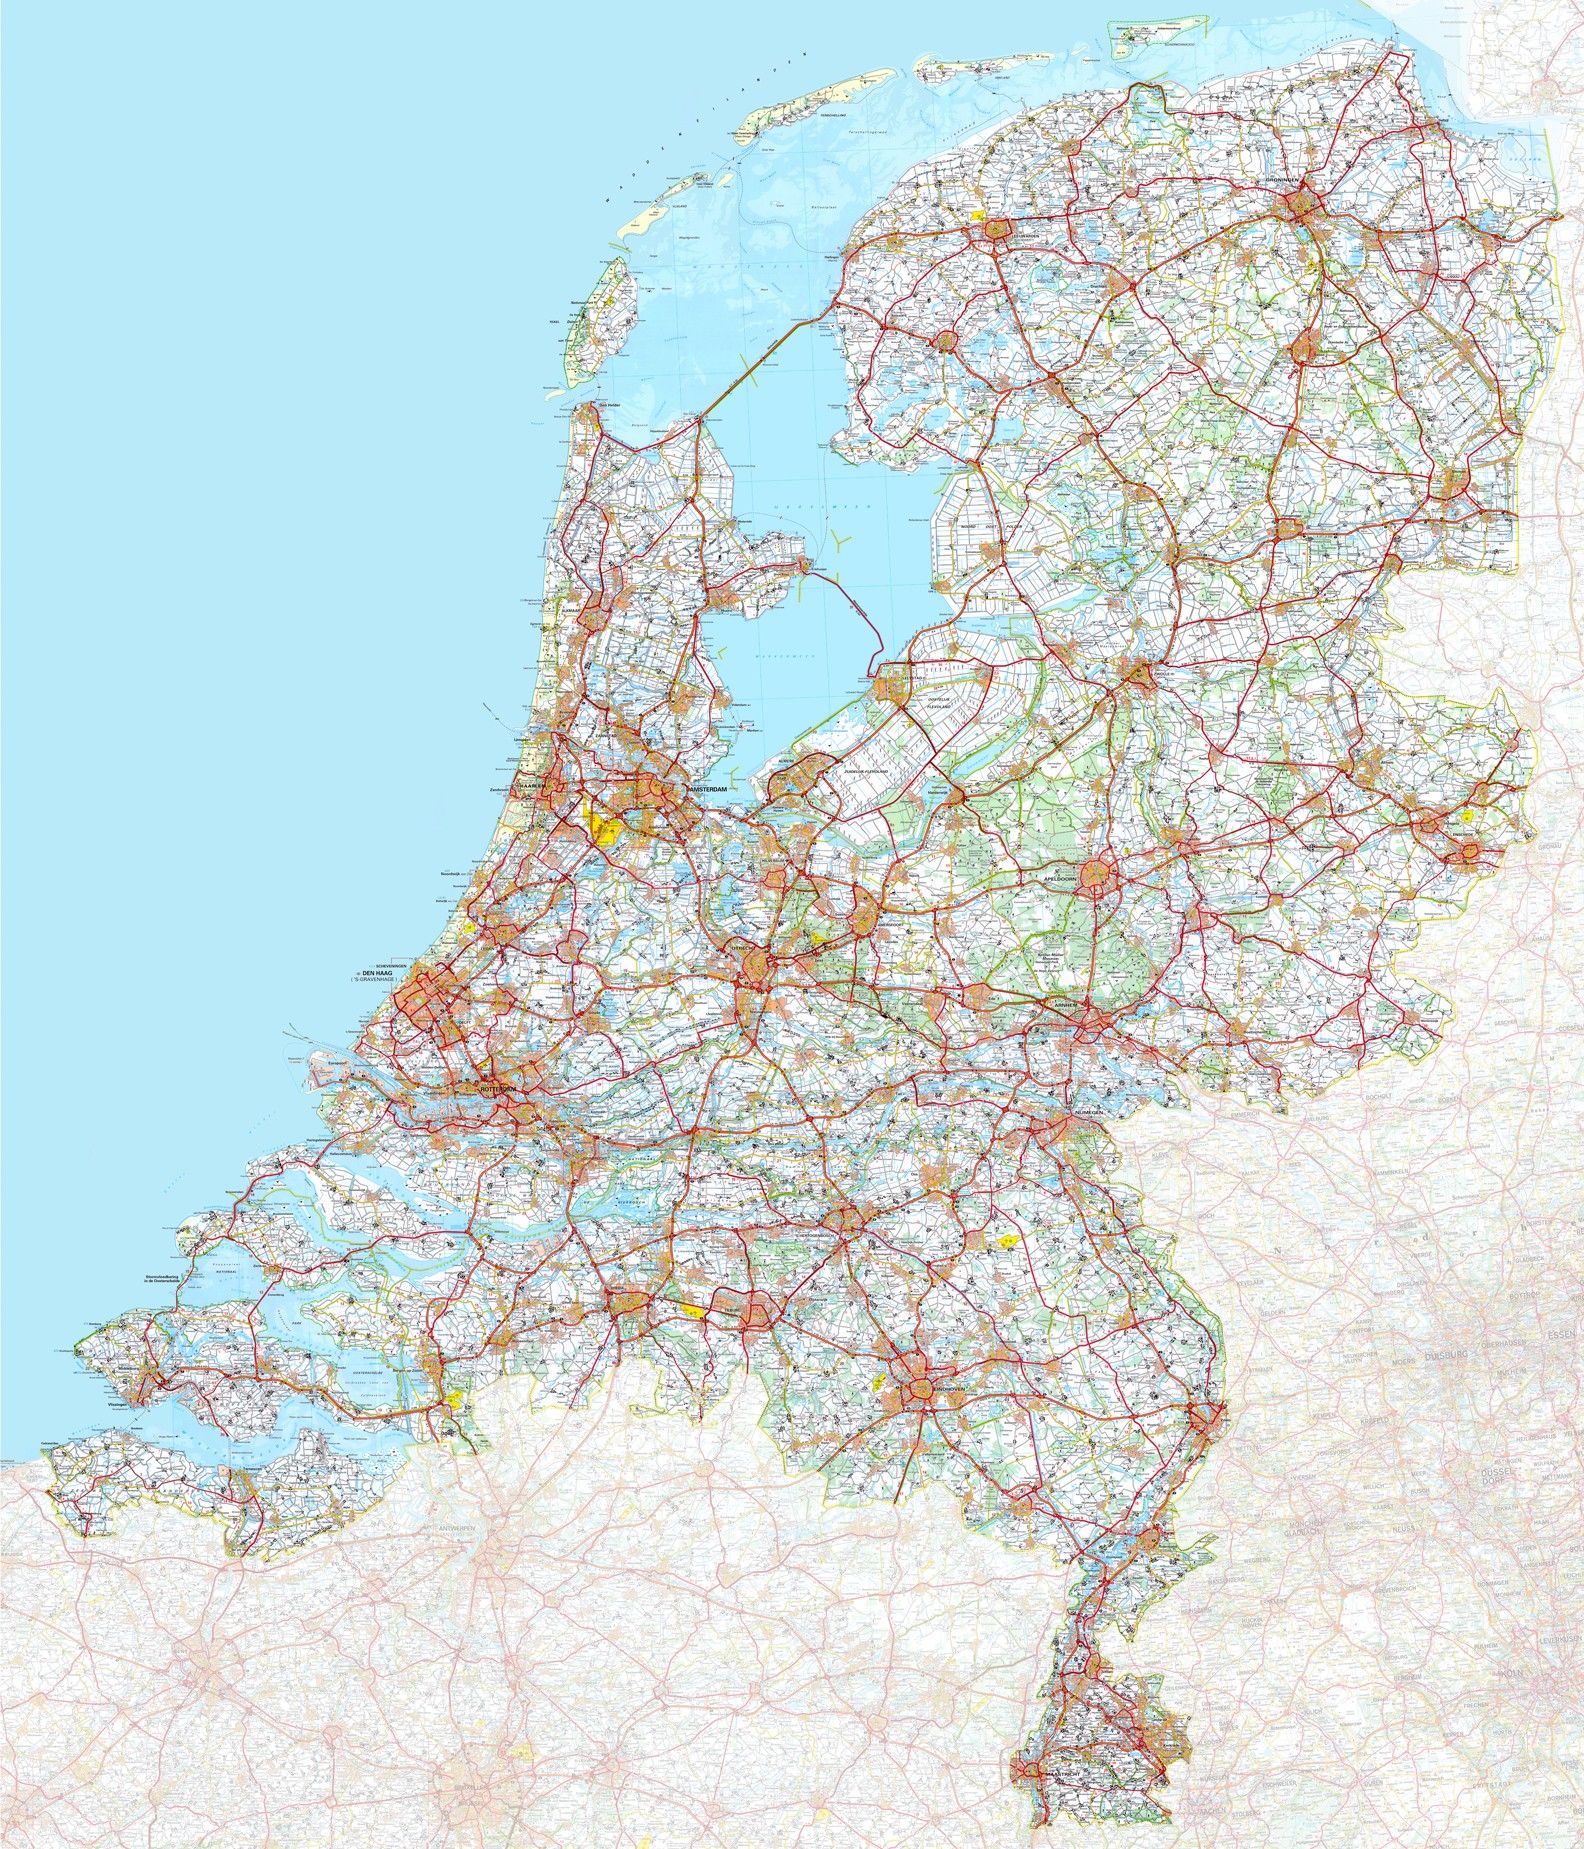 omvang opening Wonder Koop Landkaart Nederland Groot 1:200.000 voordelig online bij COMMEE